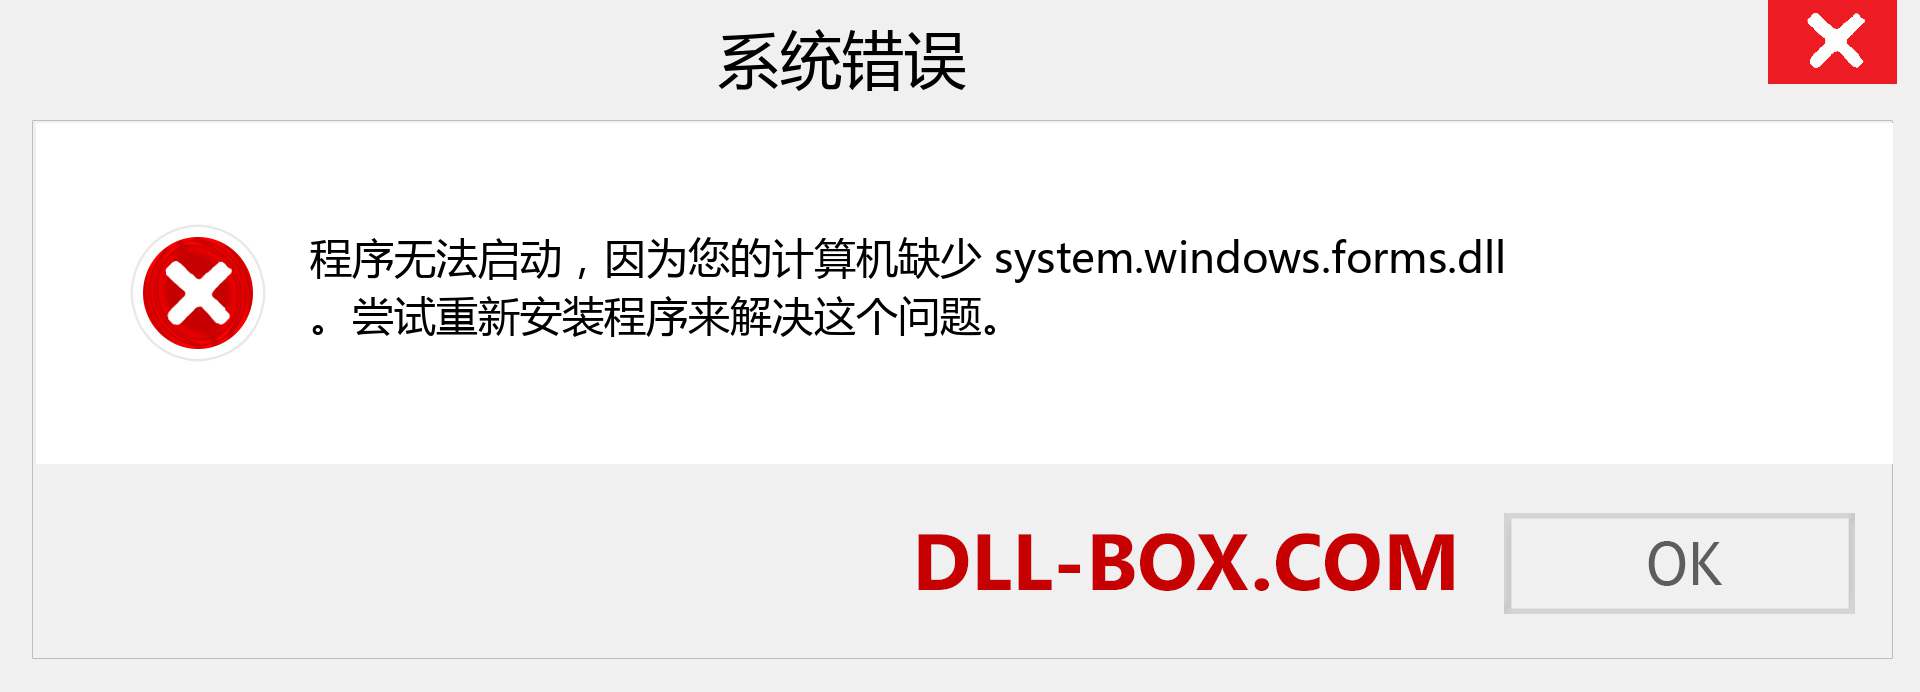 system.windows.forms.dll 文件丢失？。 适用于 Windows 7、8、10 的下载 - 修复 Windows、照片、图像上的 system.windows.forms dll 丢失错误